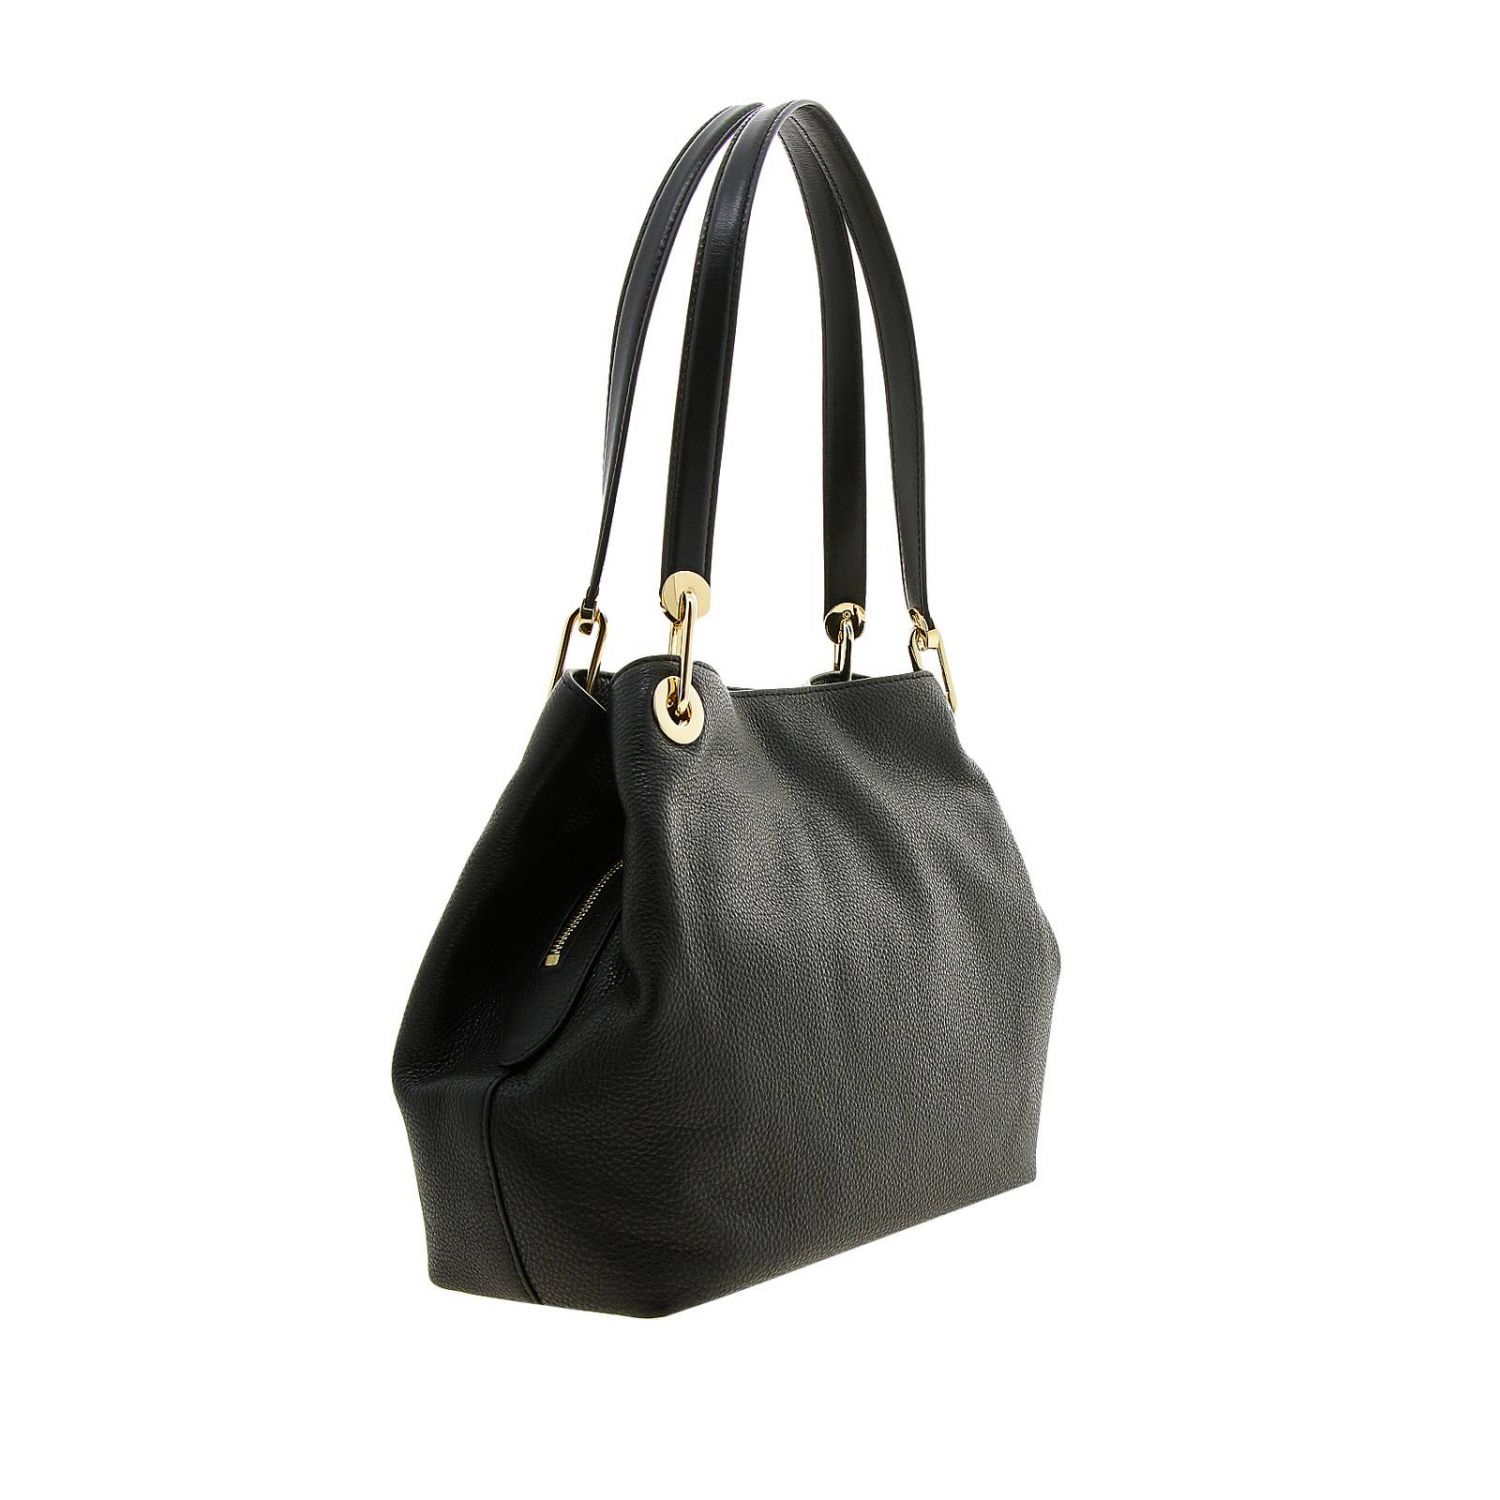 Michael Kors Outlet: shoulder bag for woman - Black | Michael Kors ...